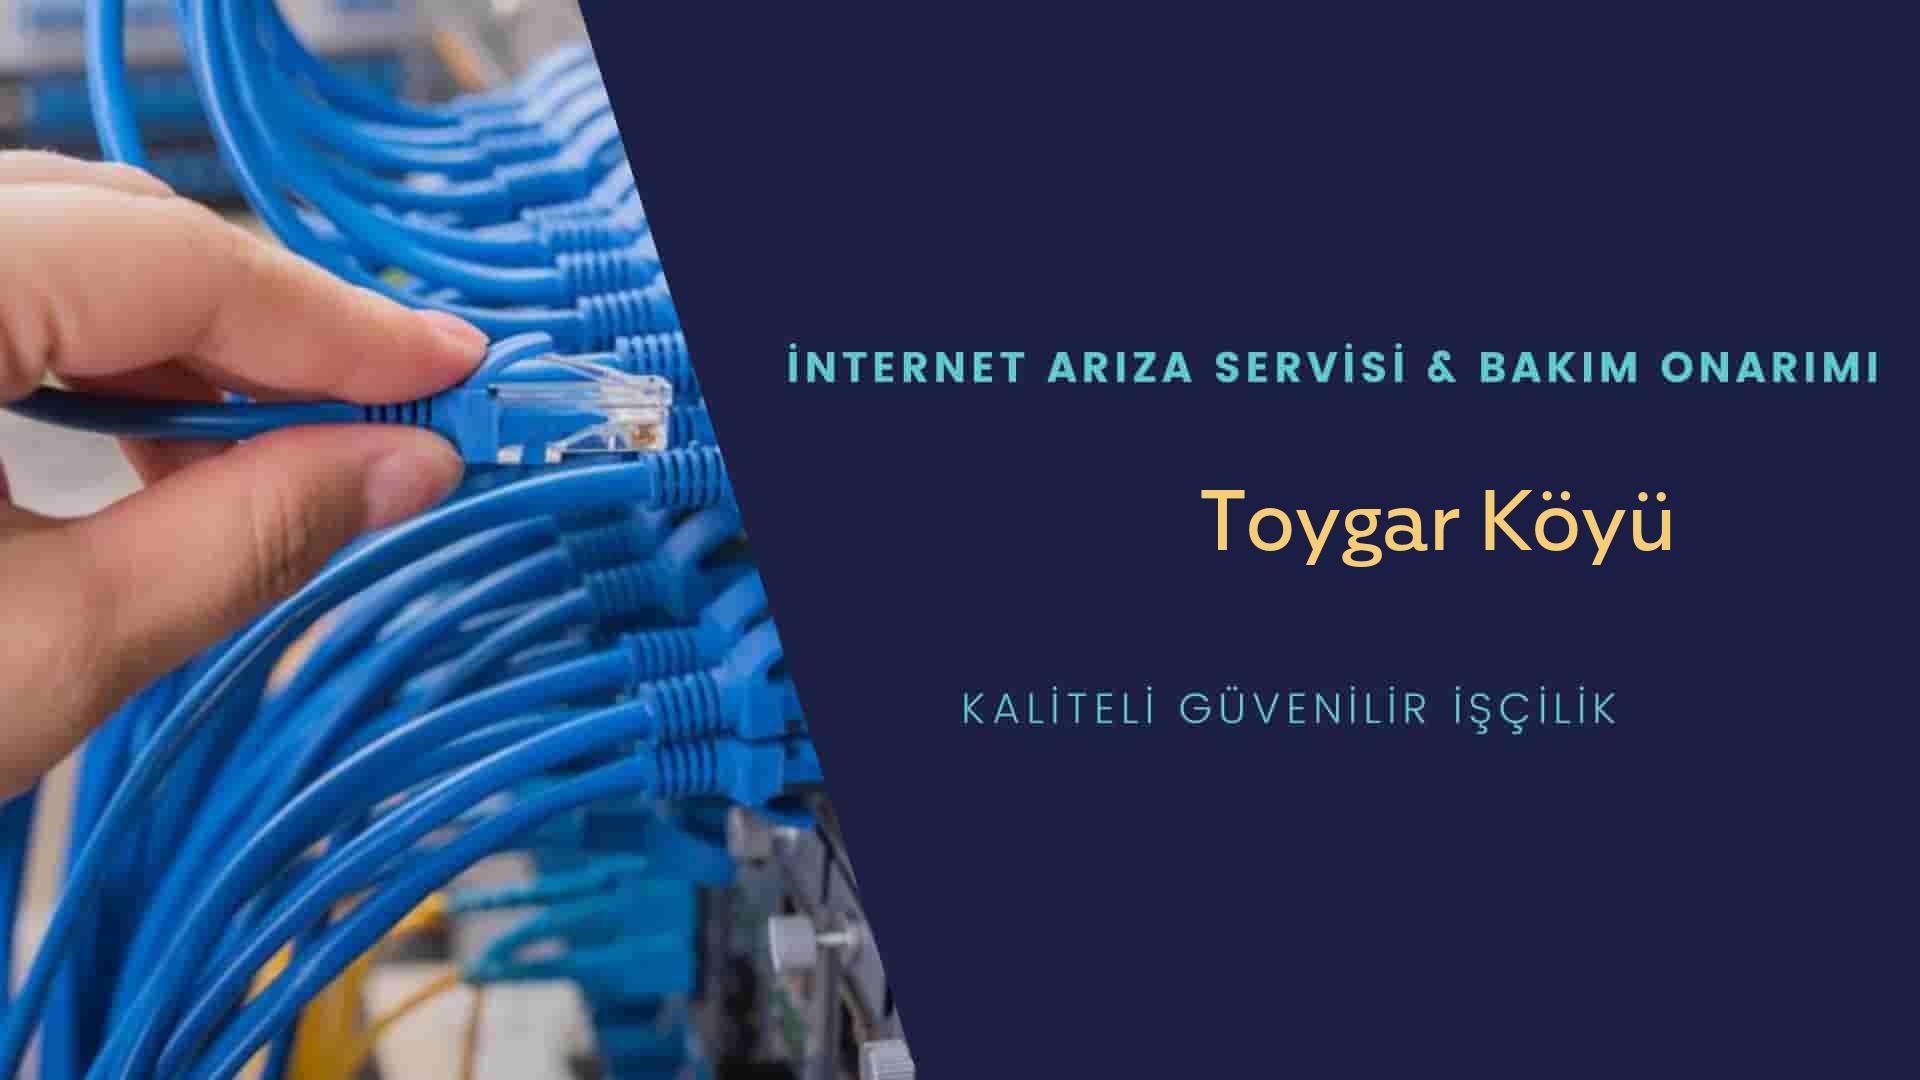 Toygar Köyü internet kablosu çekimi yapan yerler veya elektrikçiler mi? arıyorsunuz doğru yerdesiniz o zaman sizlere 7/24 yardımcı olacak profesyonel ustalarımız bir telefon kadar yakındır size.